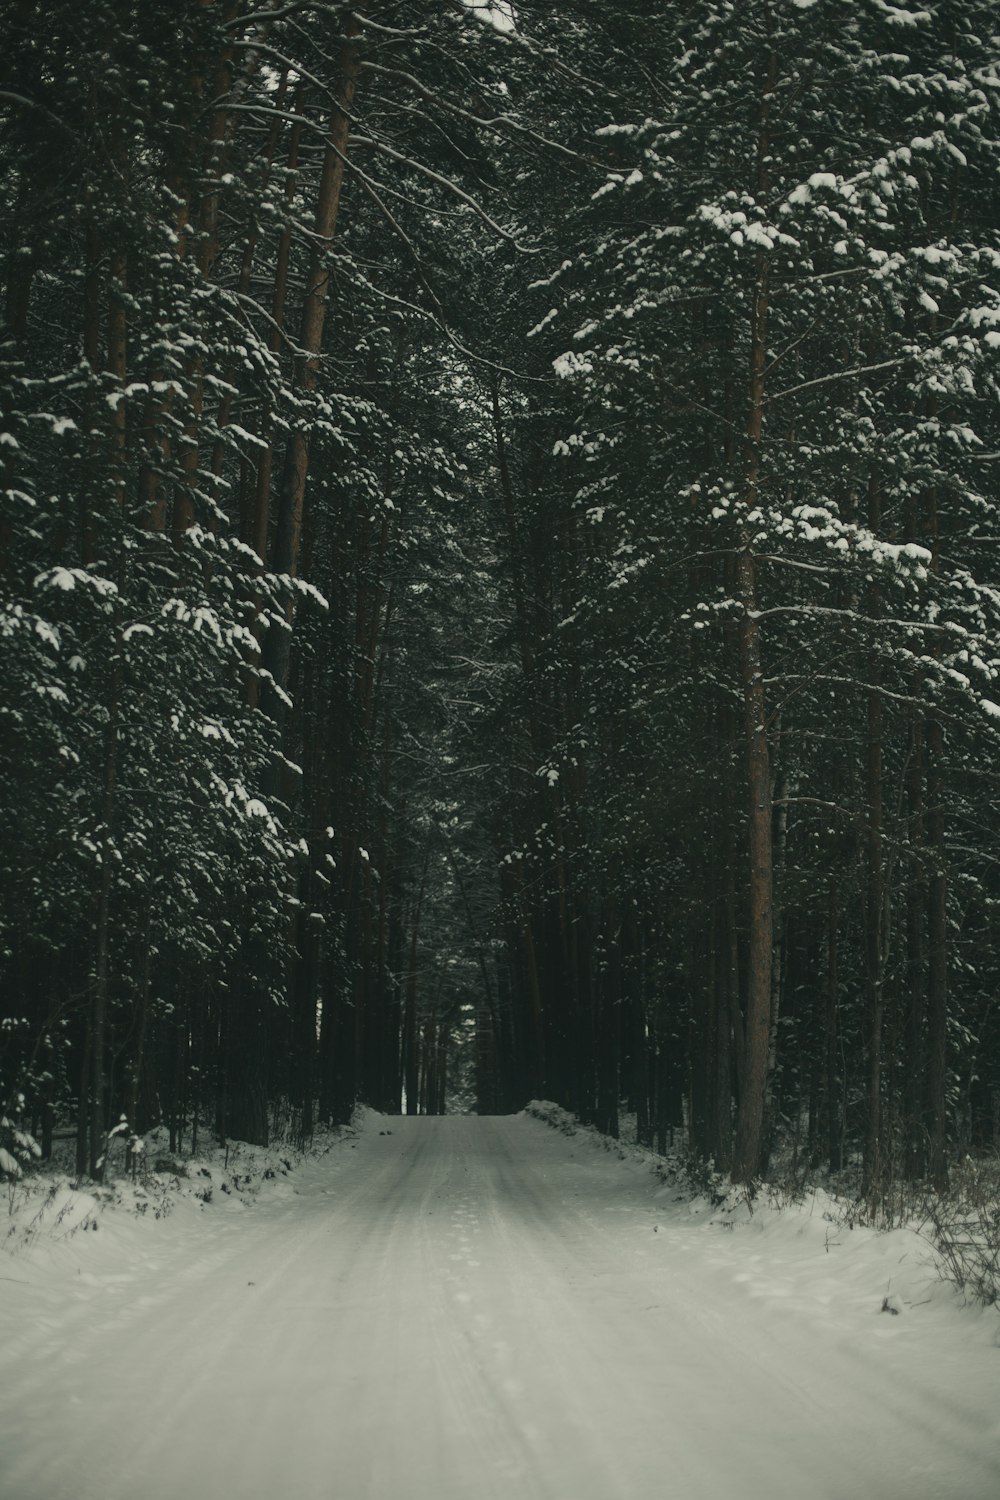 estrada coberta de neve entre árvores durante o dia